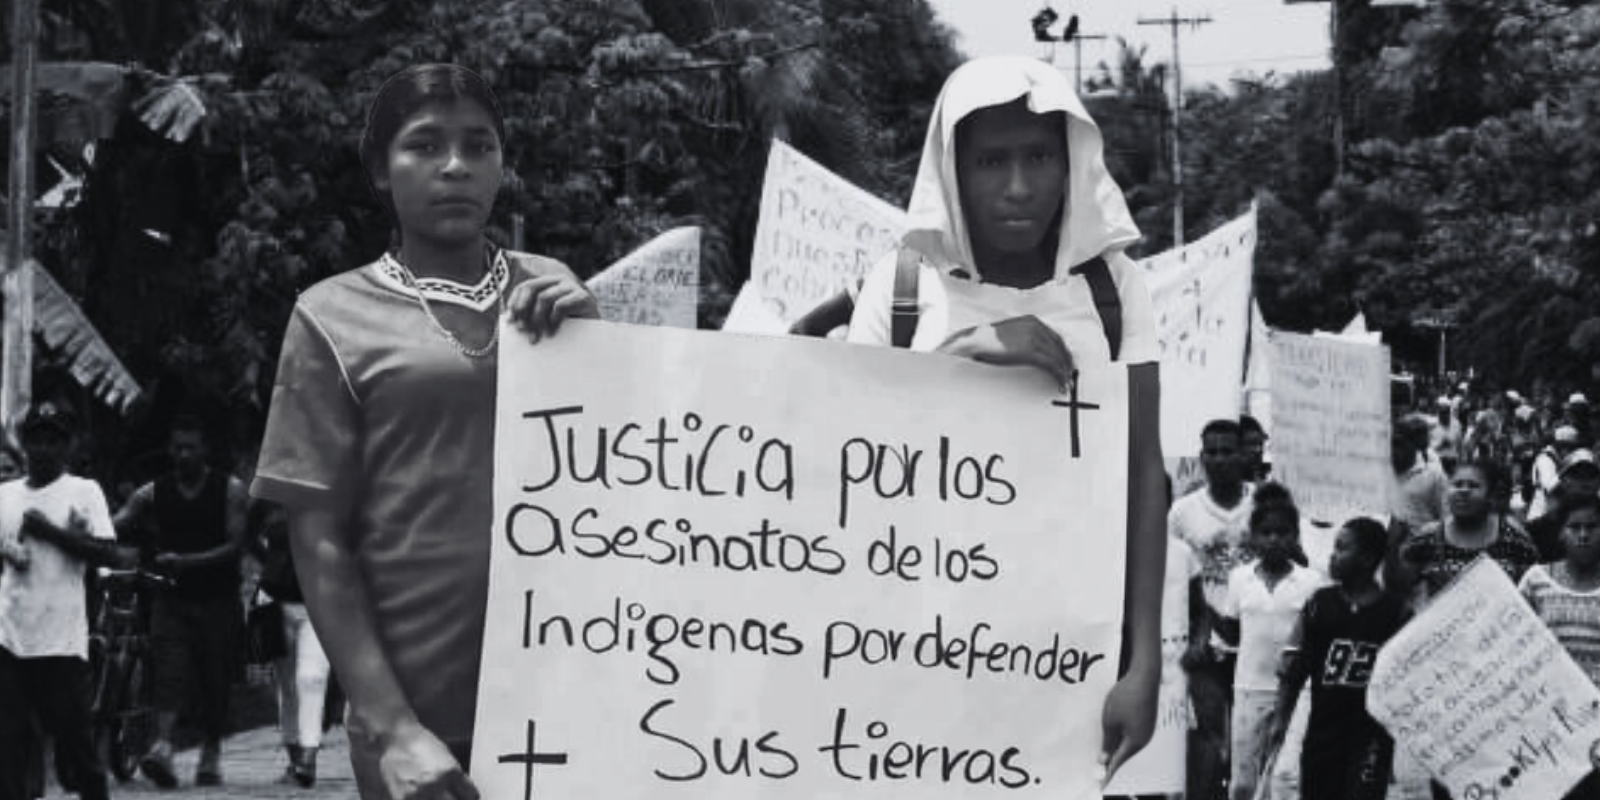 La violencia está sacando a indígena de sus tierras en Nicaragua